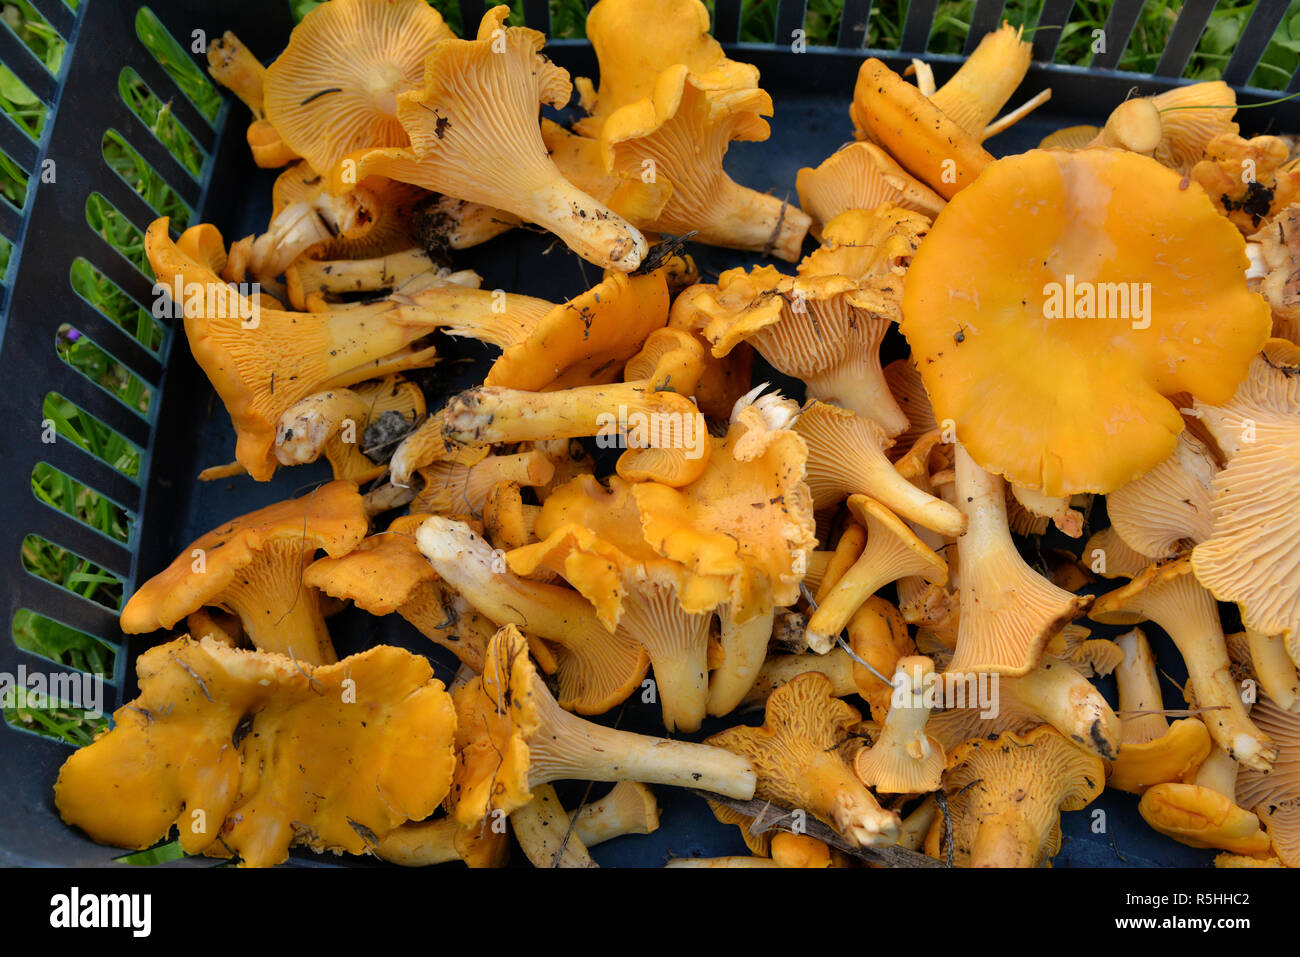 Un panier plein de champignons chanterelles fraîches Banque D'Images